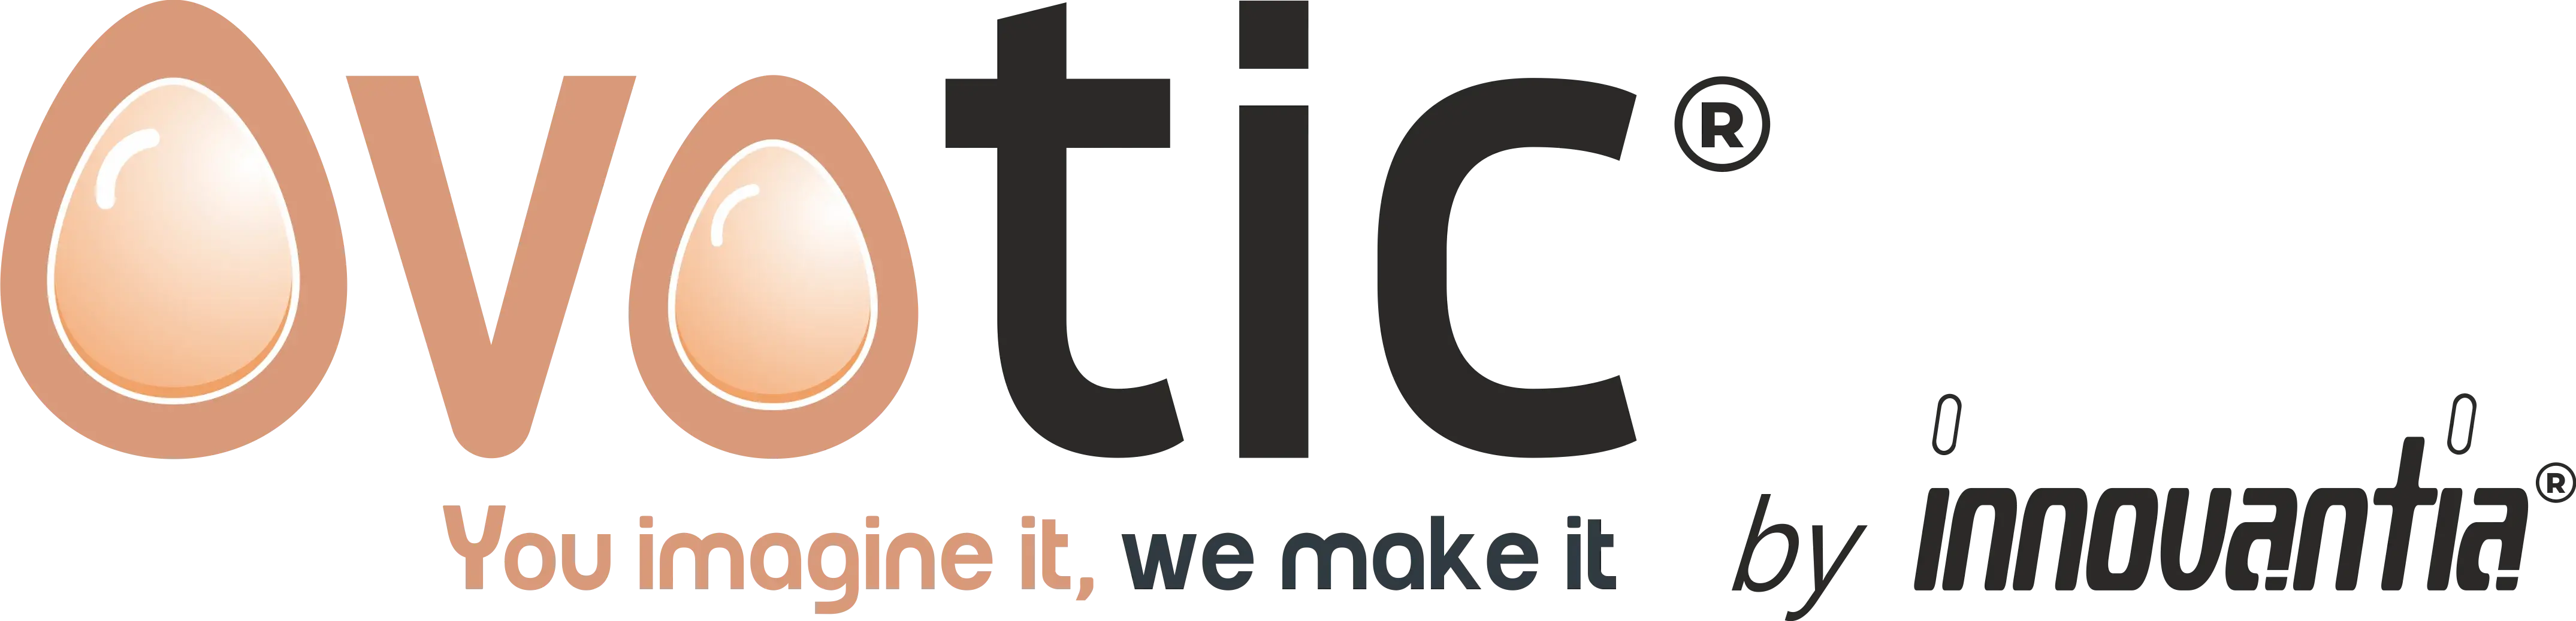 Logotipo de la submara de Innovantia Ovotic